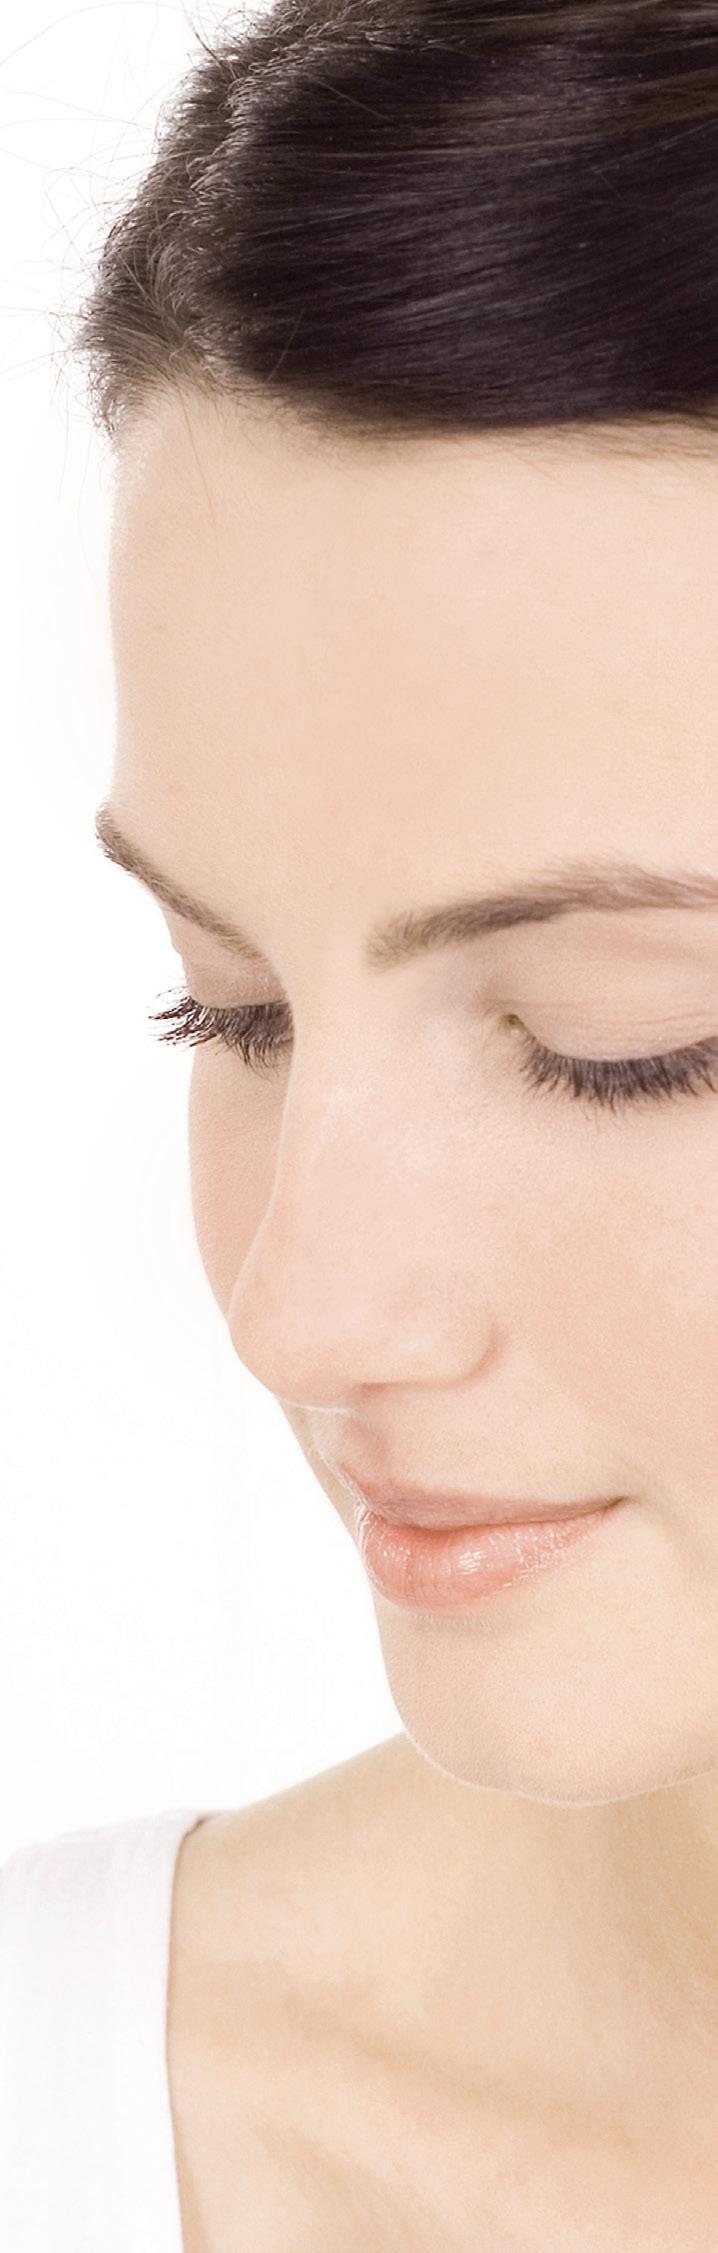 Afrens og tonic Eye Make-up Remover Denne milde øjenmakeupfjerner er specielt udviklet til den følsomme og sarte hud omkring øjnene.